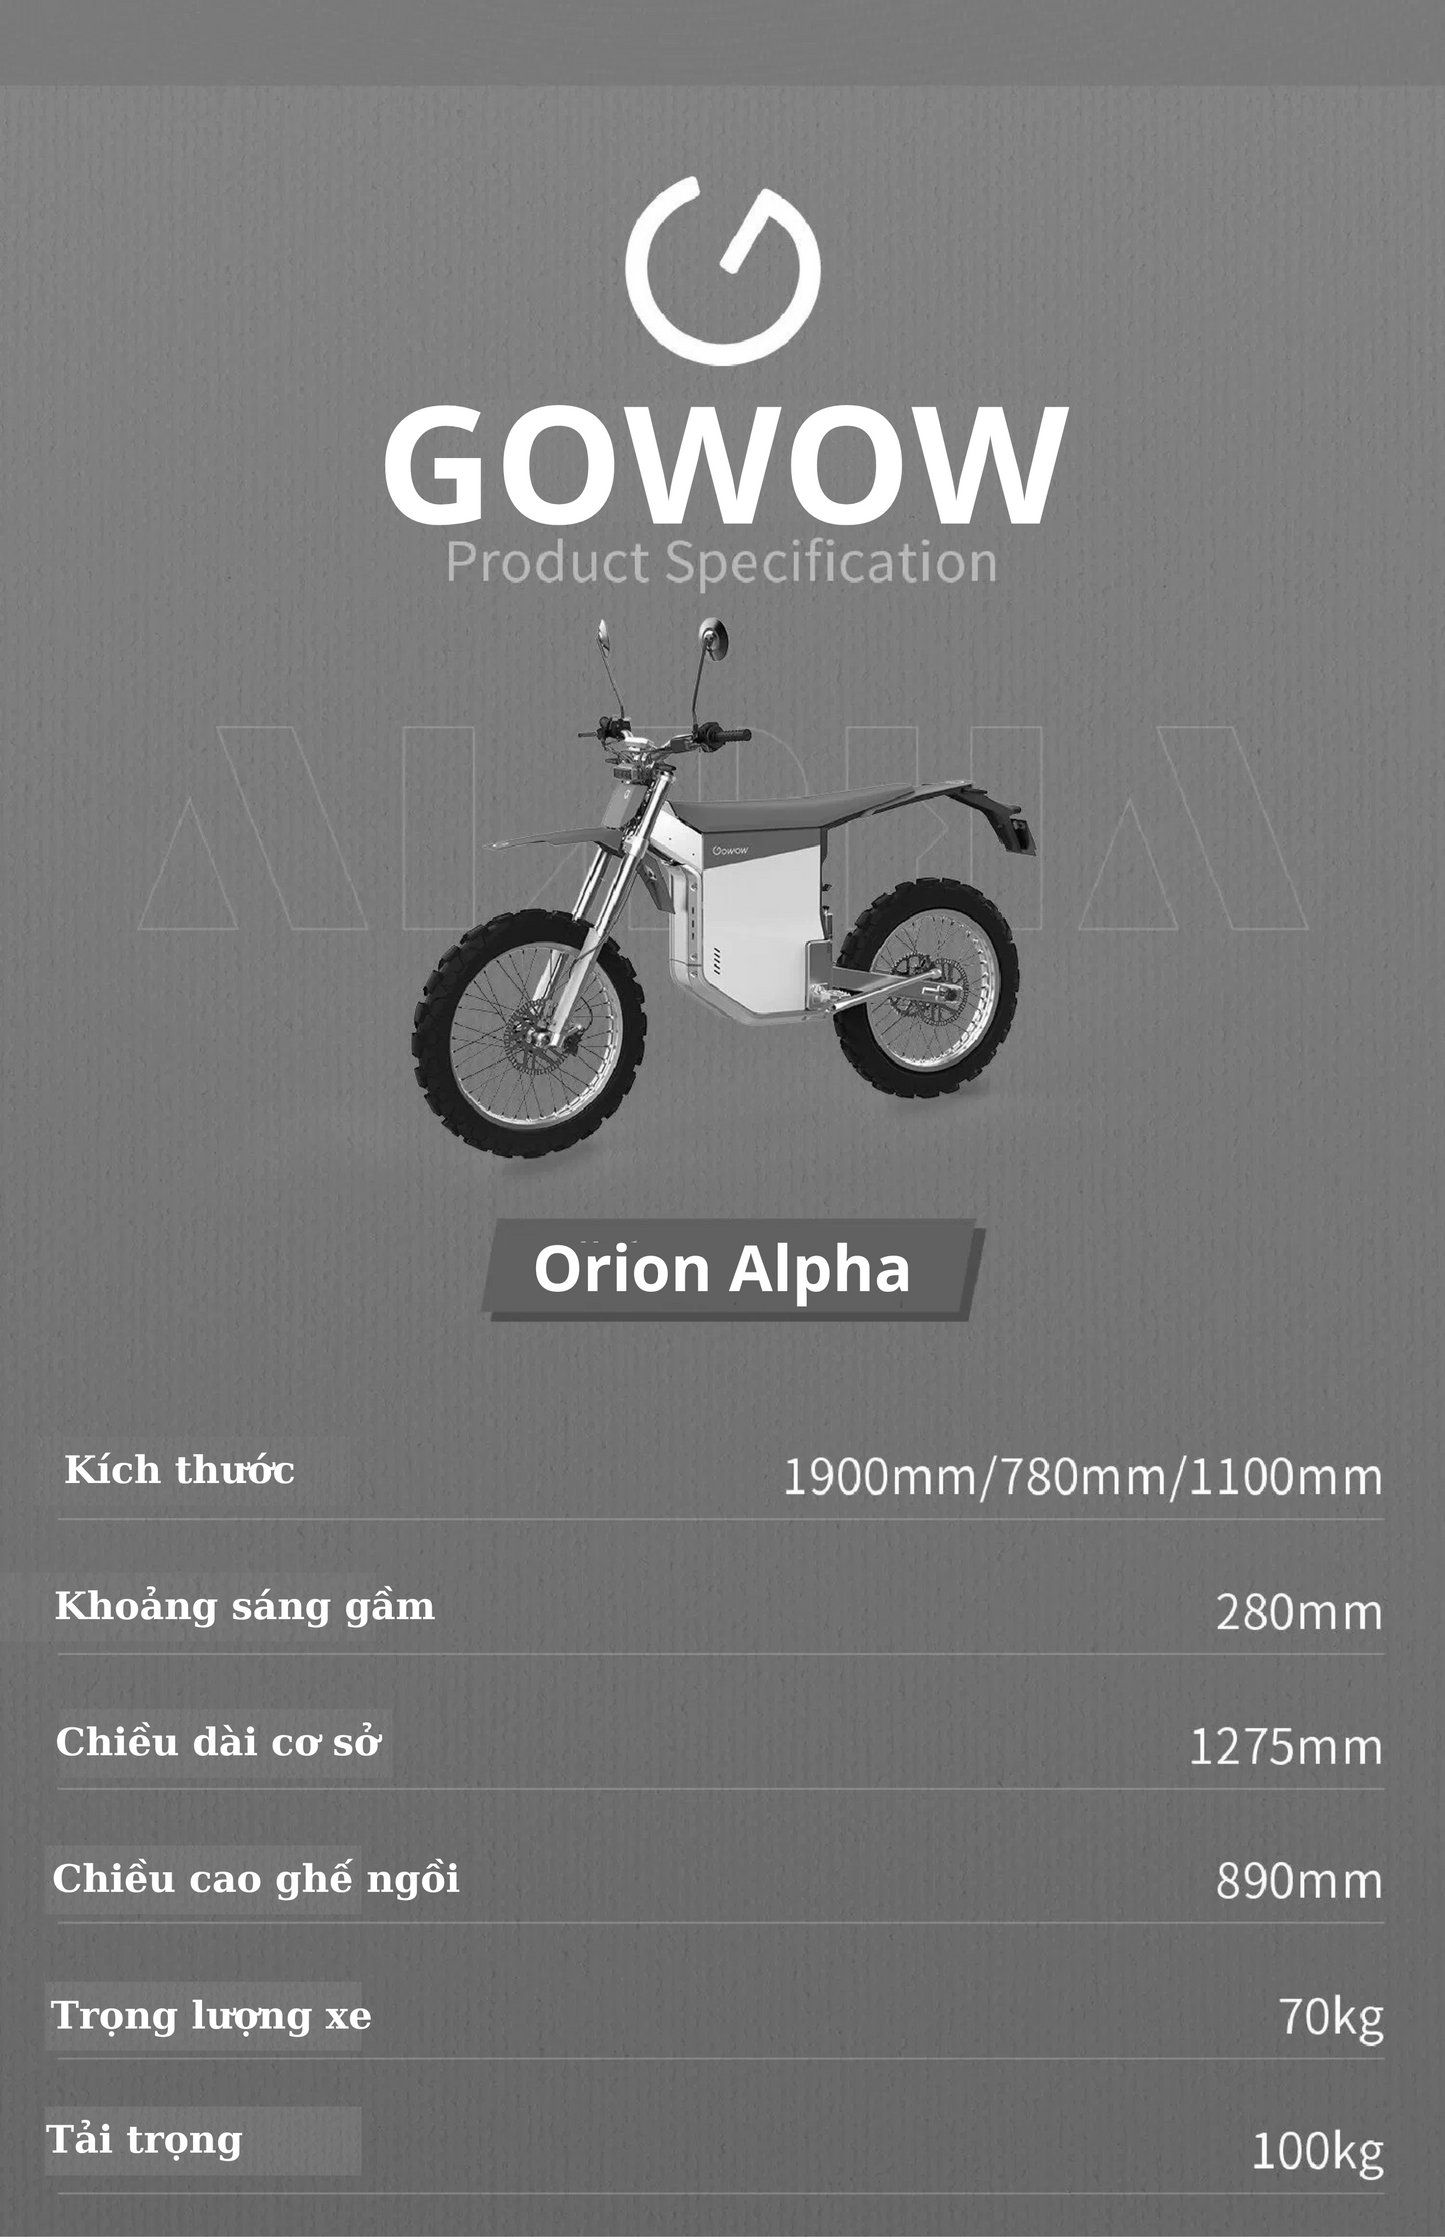 Gowow Alpha: Sức Mạnh Điện Năng, Trải Nghiệm Đỉnh Cao - MÔTÔ ĐỊA HÌNH